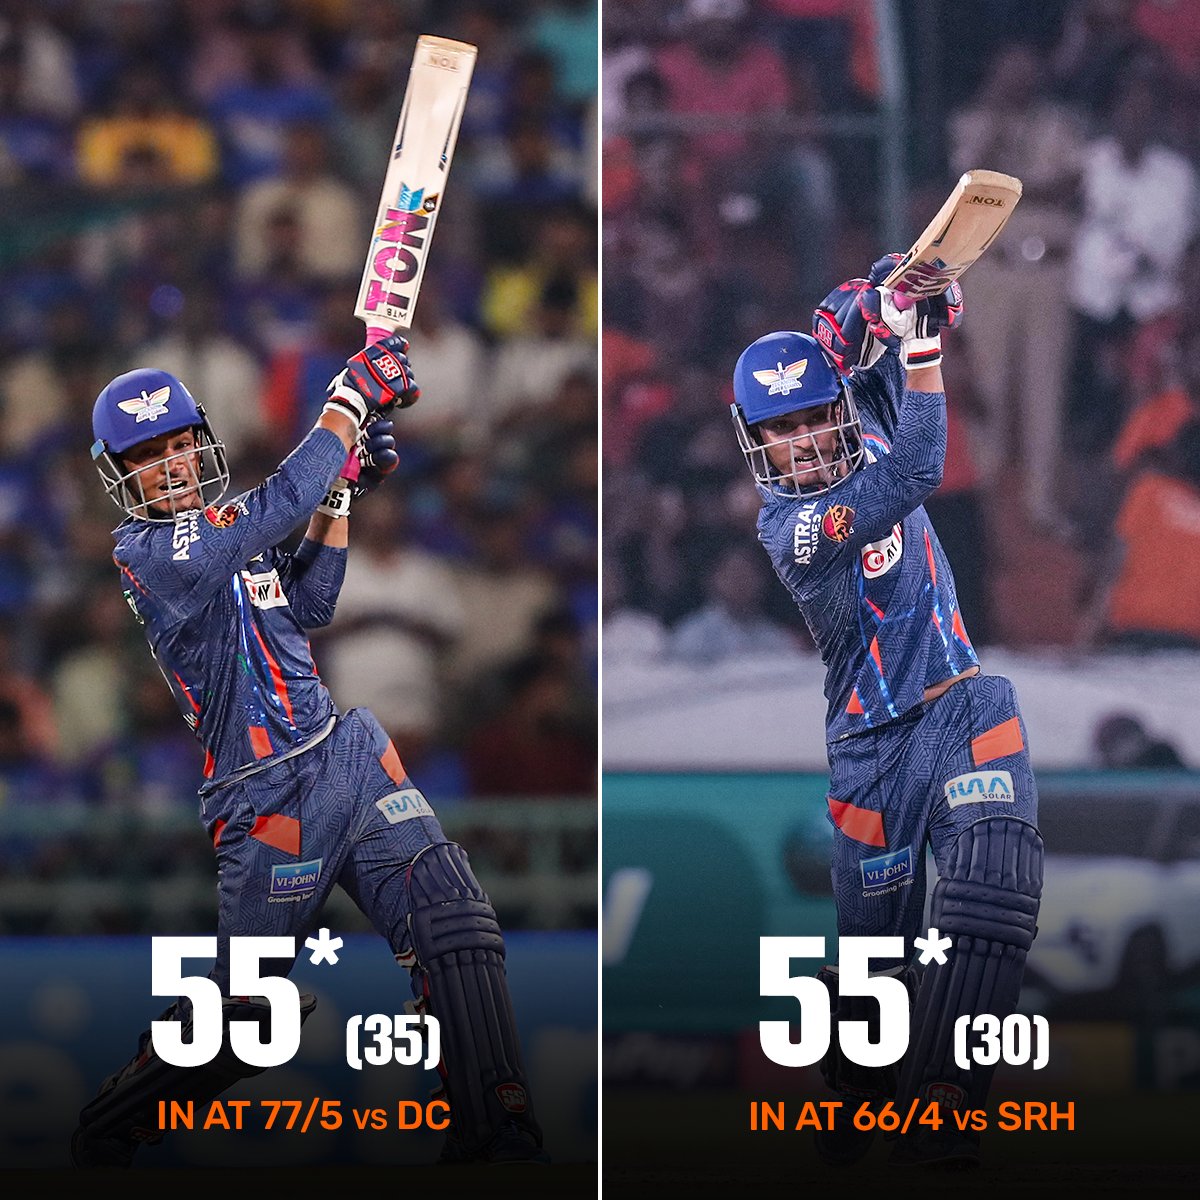  Ayush Badoni ने 30 बालो में 9 चौके की मदद से 55 रनों की नॉट आउट पारी खेली